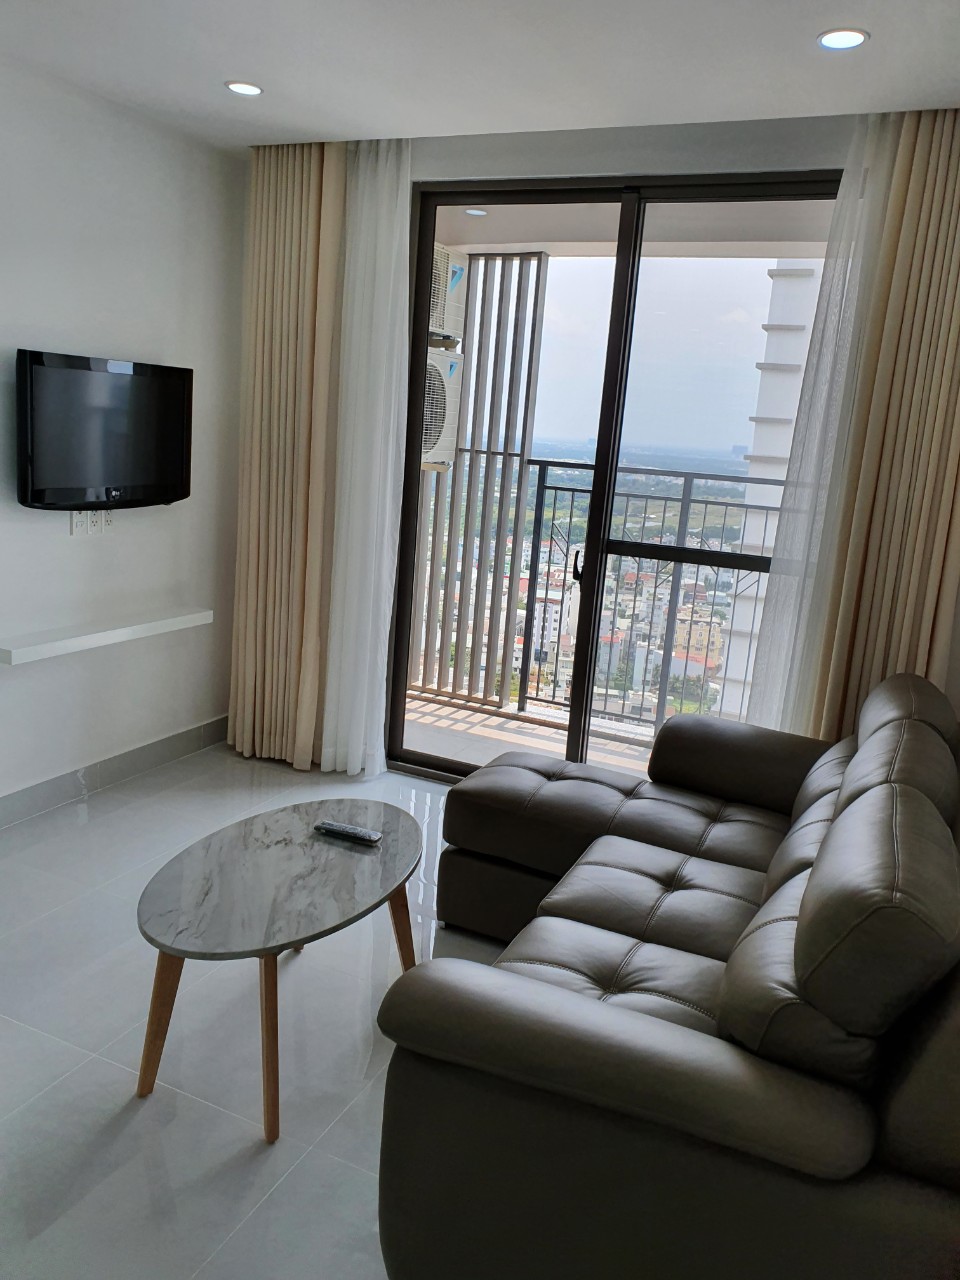 Giá tốt cho thuê căn hộ Saigon South - 71m2 2PN 2WC - full nội thất đẹp.